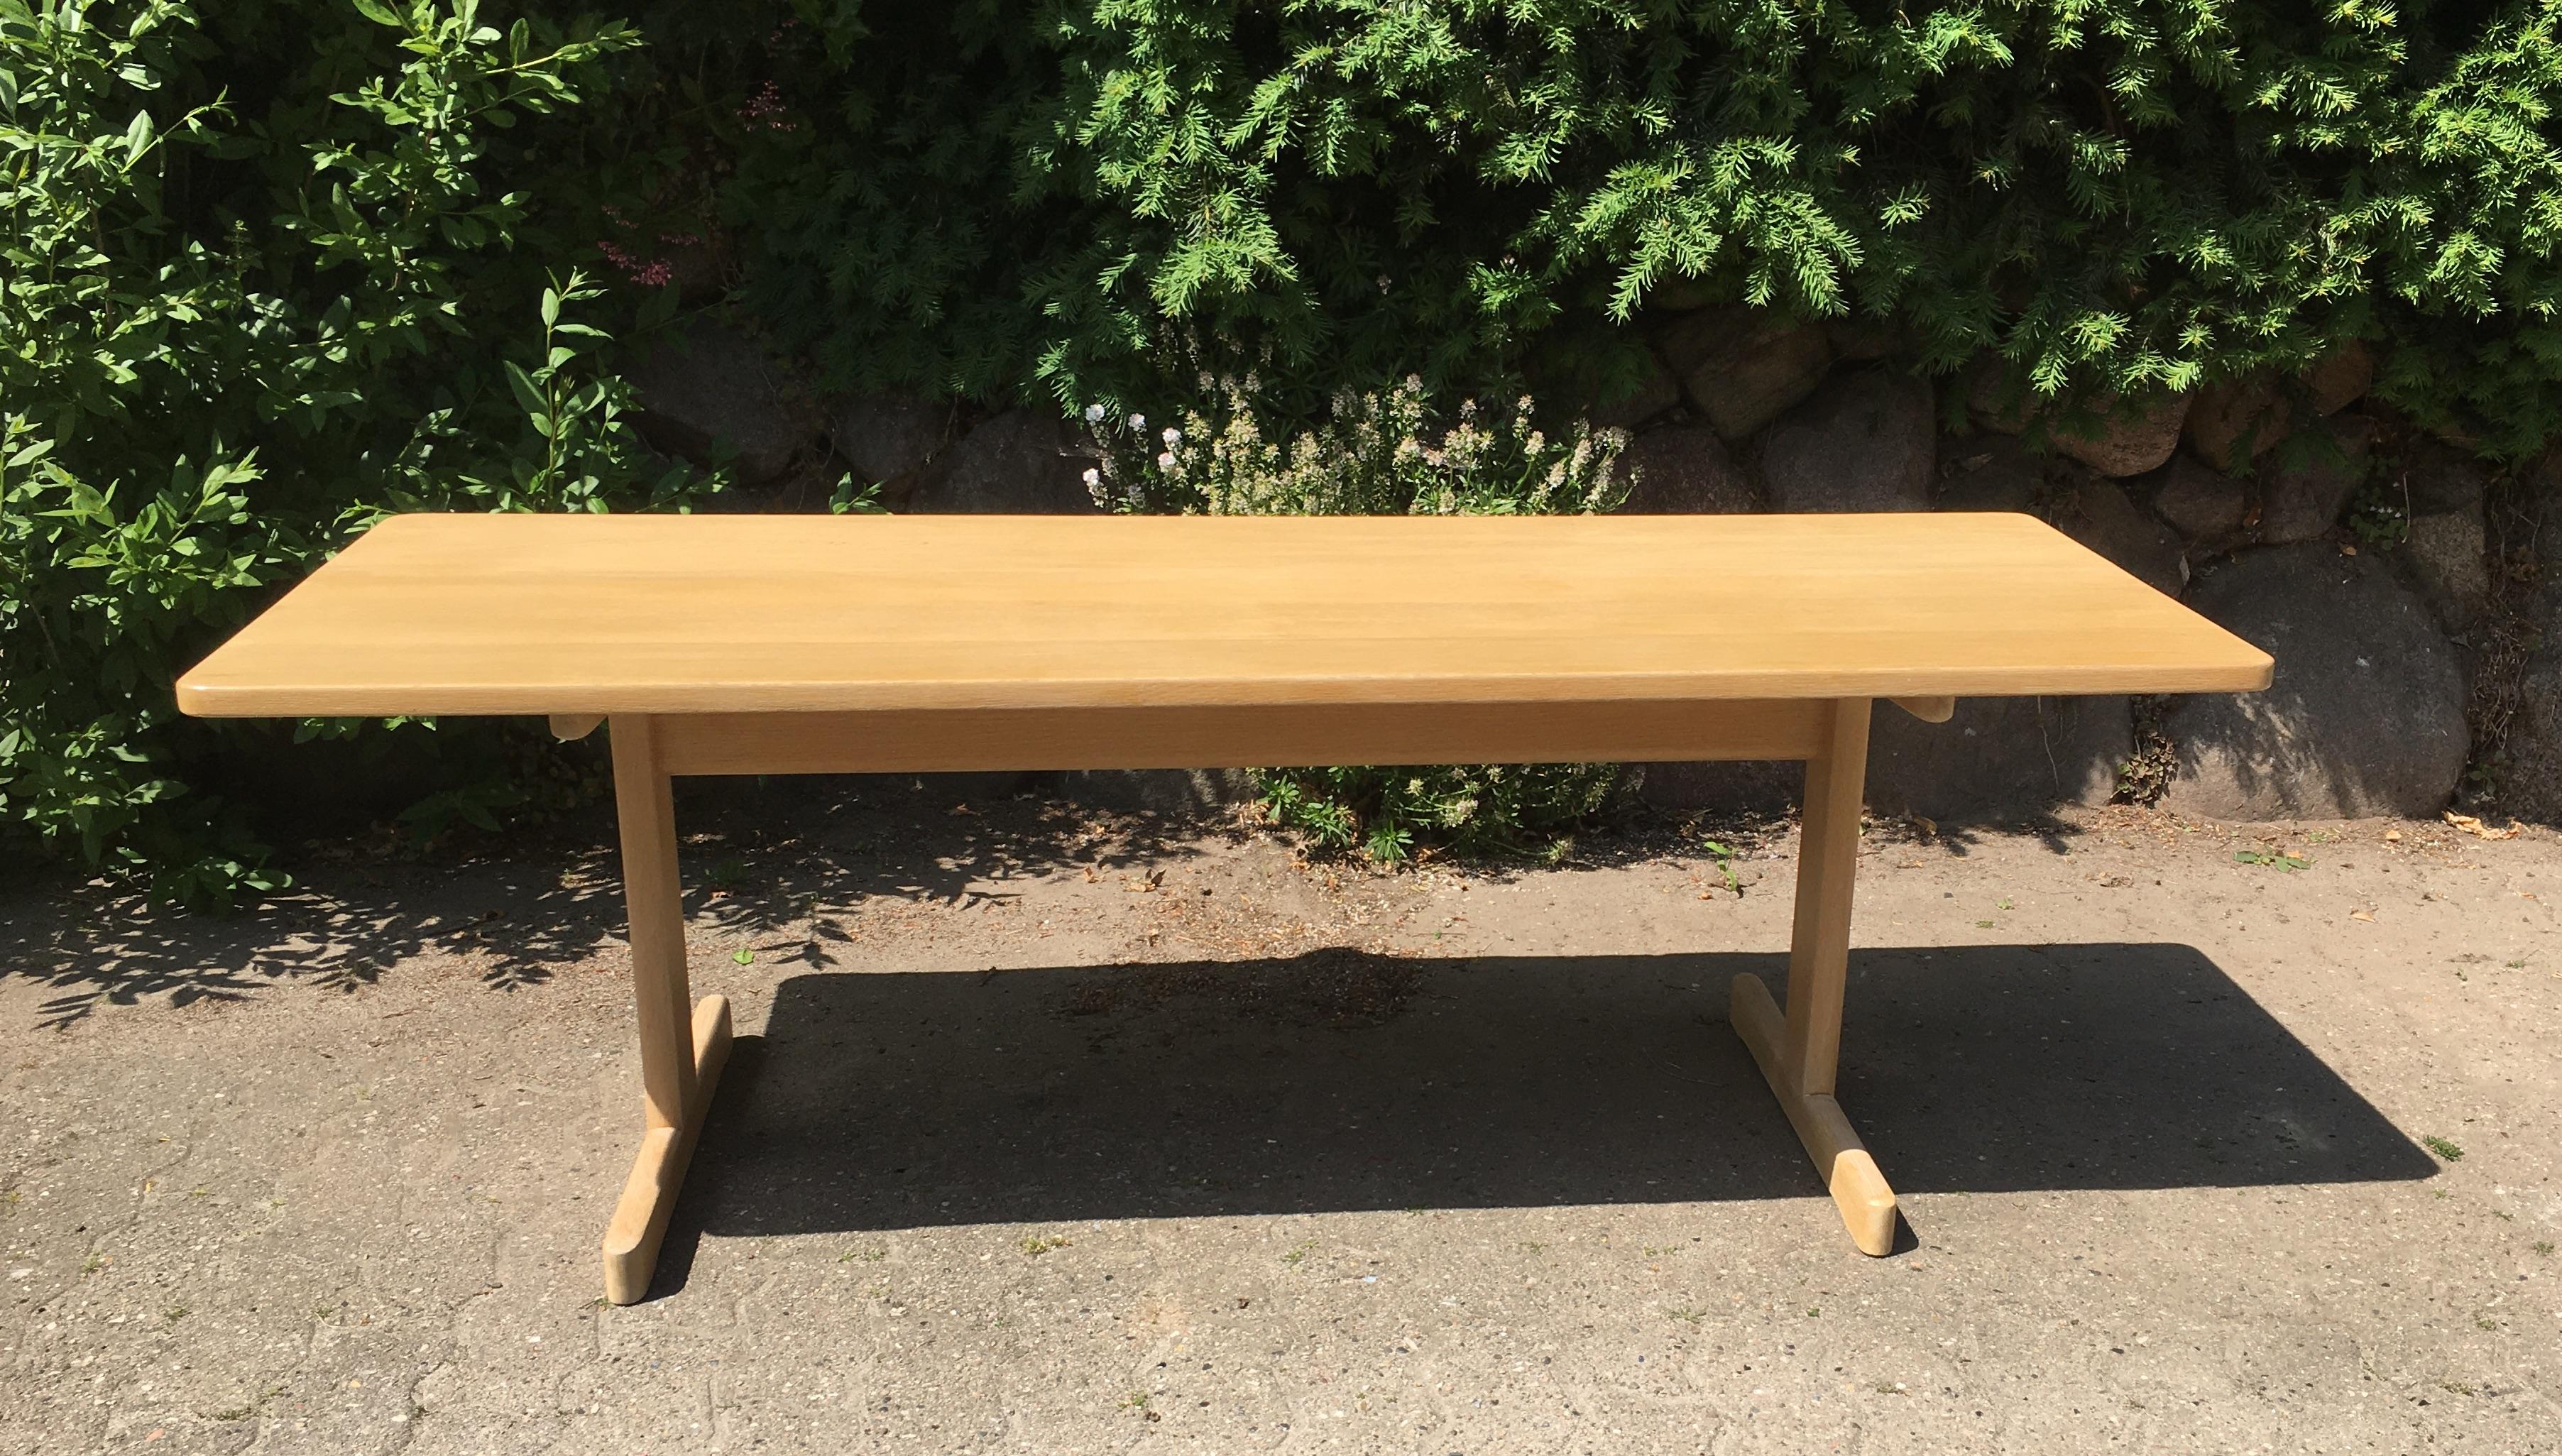 La table basse classique et emblématique de Børge Mogensen - modèle 5269 - pour Fredericia Furniture.

Chêne massif.

La table a été remise à neuf de manière experte et délicate et est en parfait état.


NielsenClassics propose des classiques danois